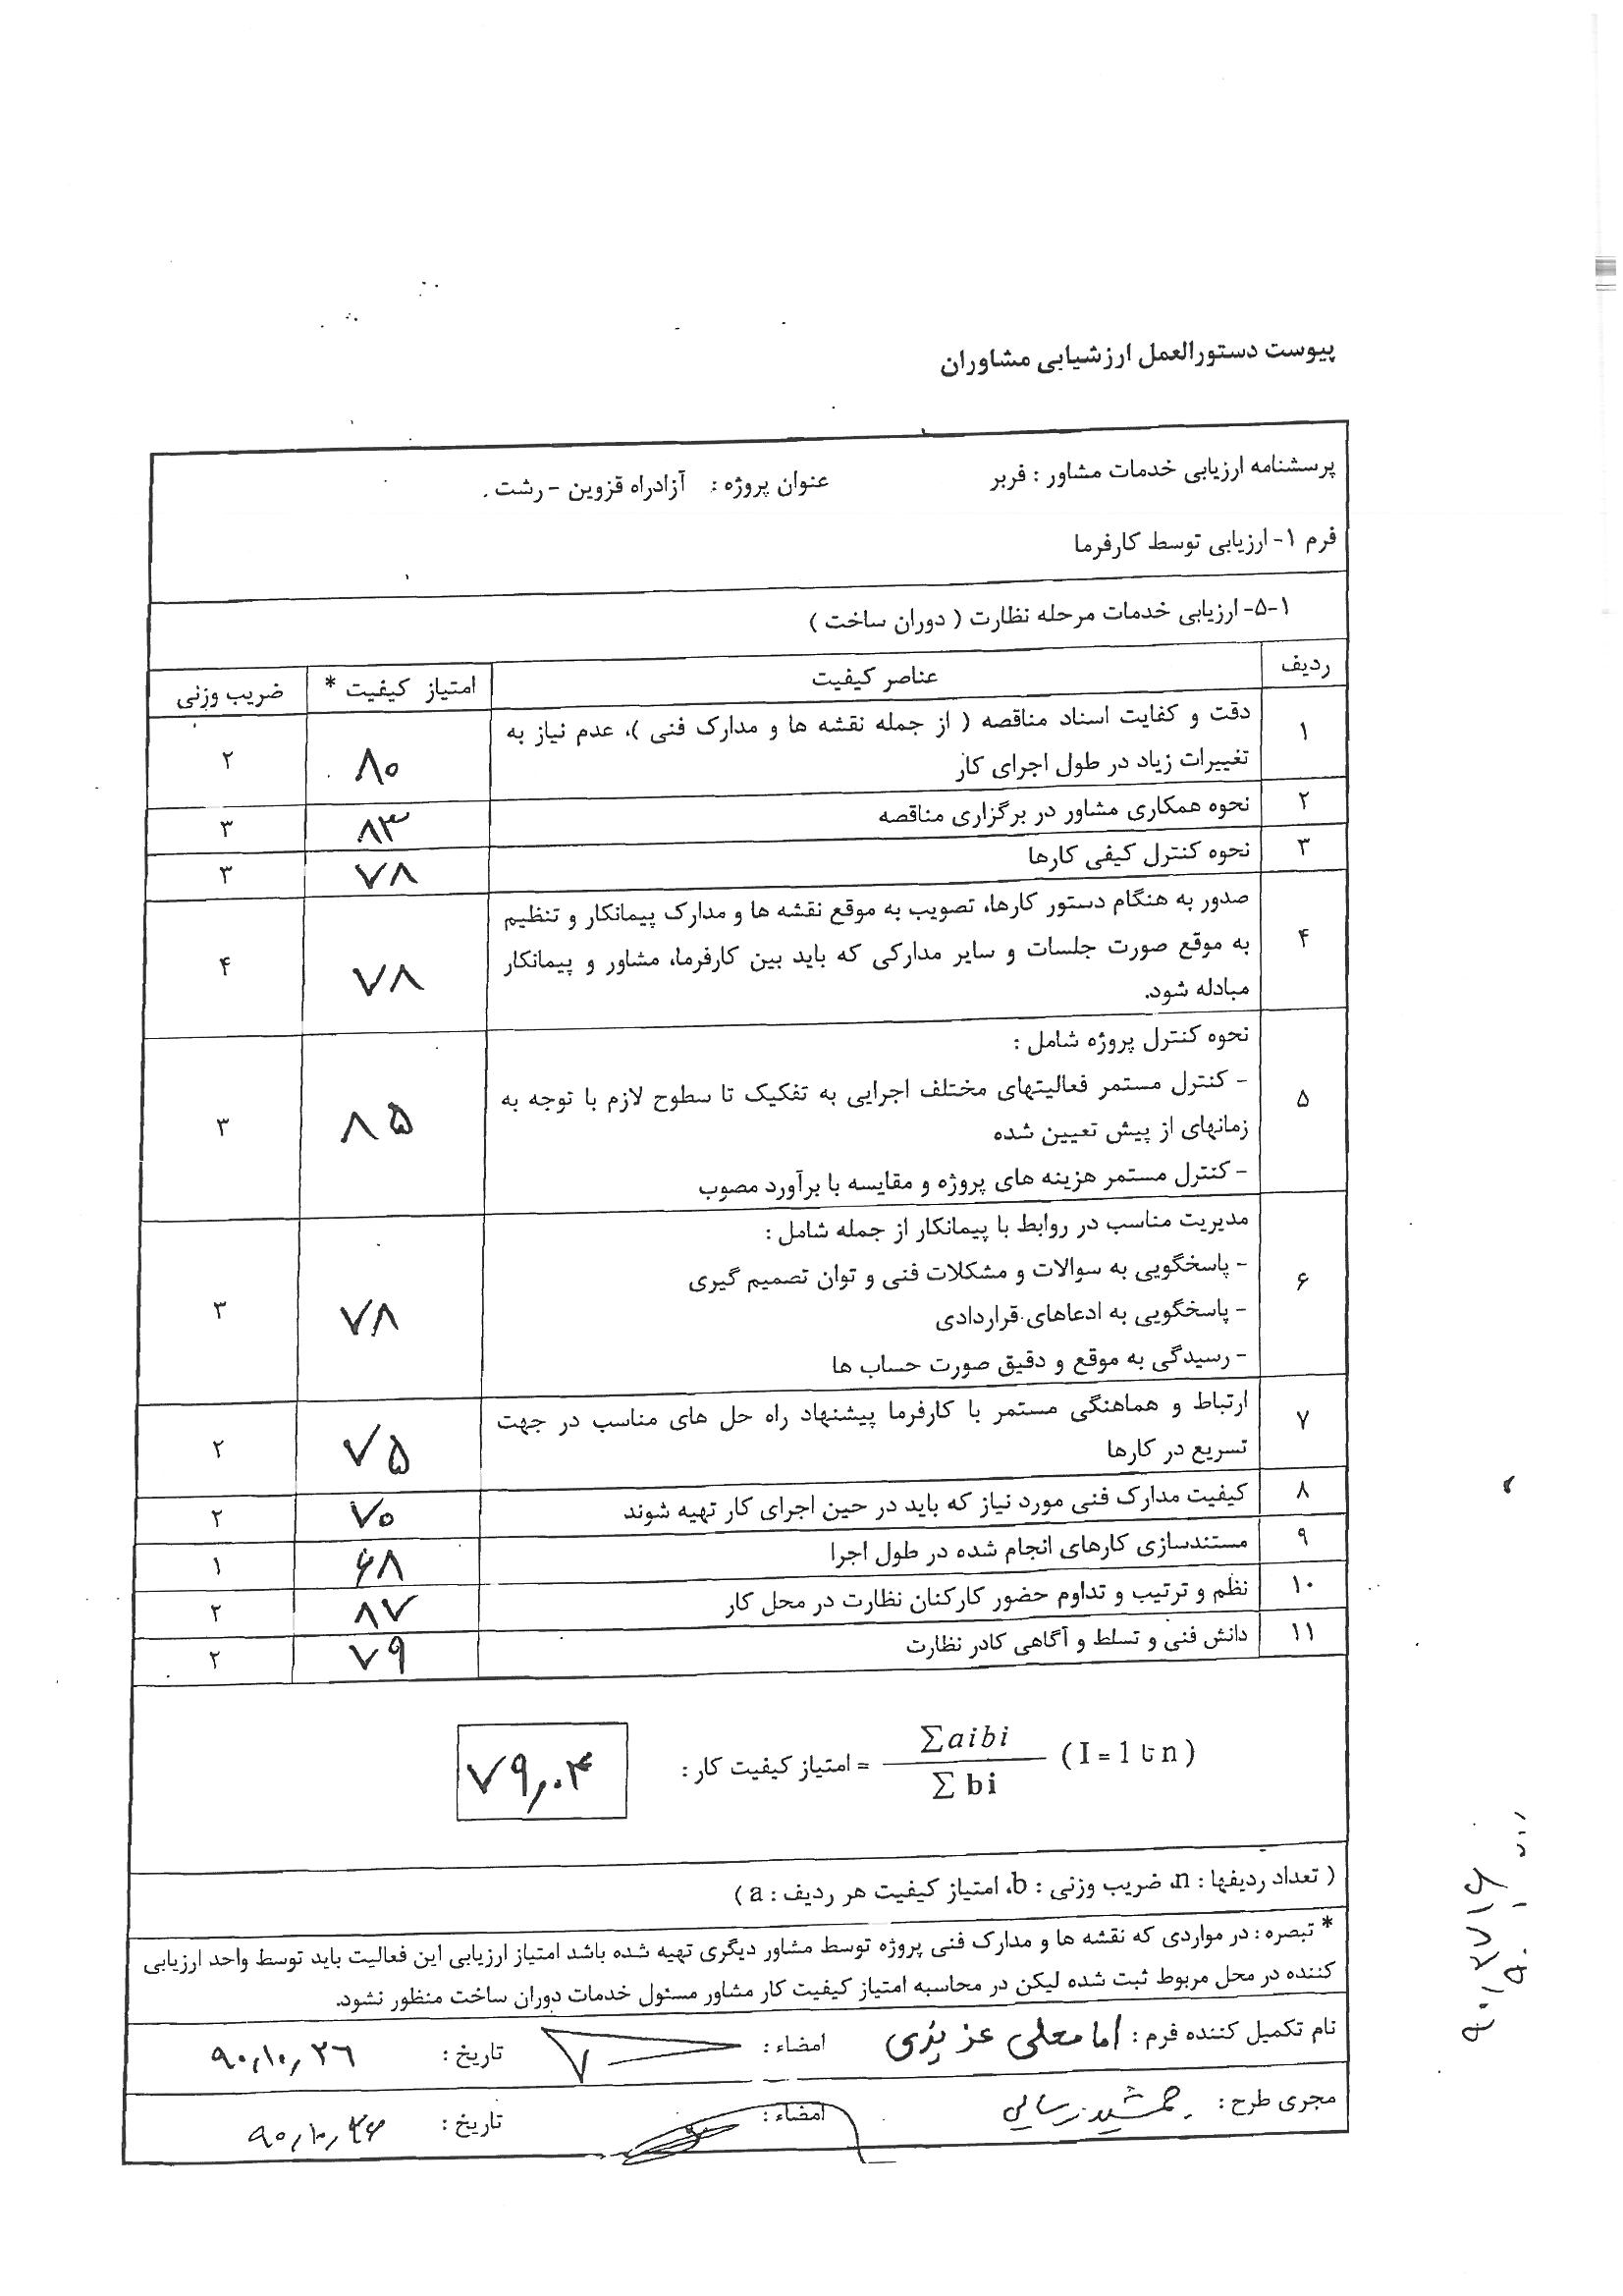 پروژه نظارت  بر عملیات قطعه 230 کیلوولت  - نتیجه ارزیابی توسط شرکت برق منطقه ای اصفهان